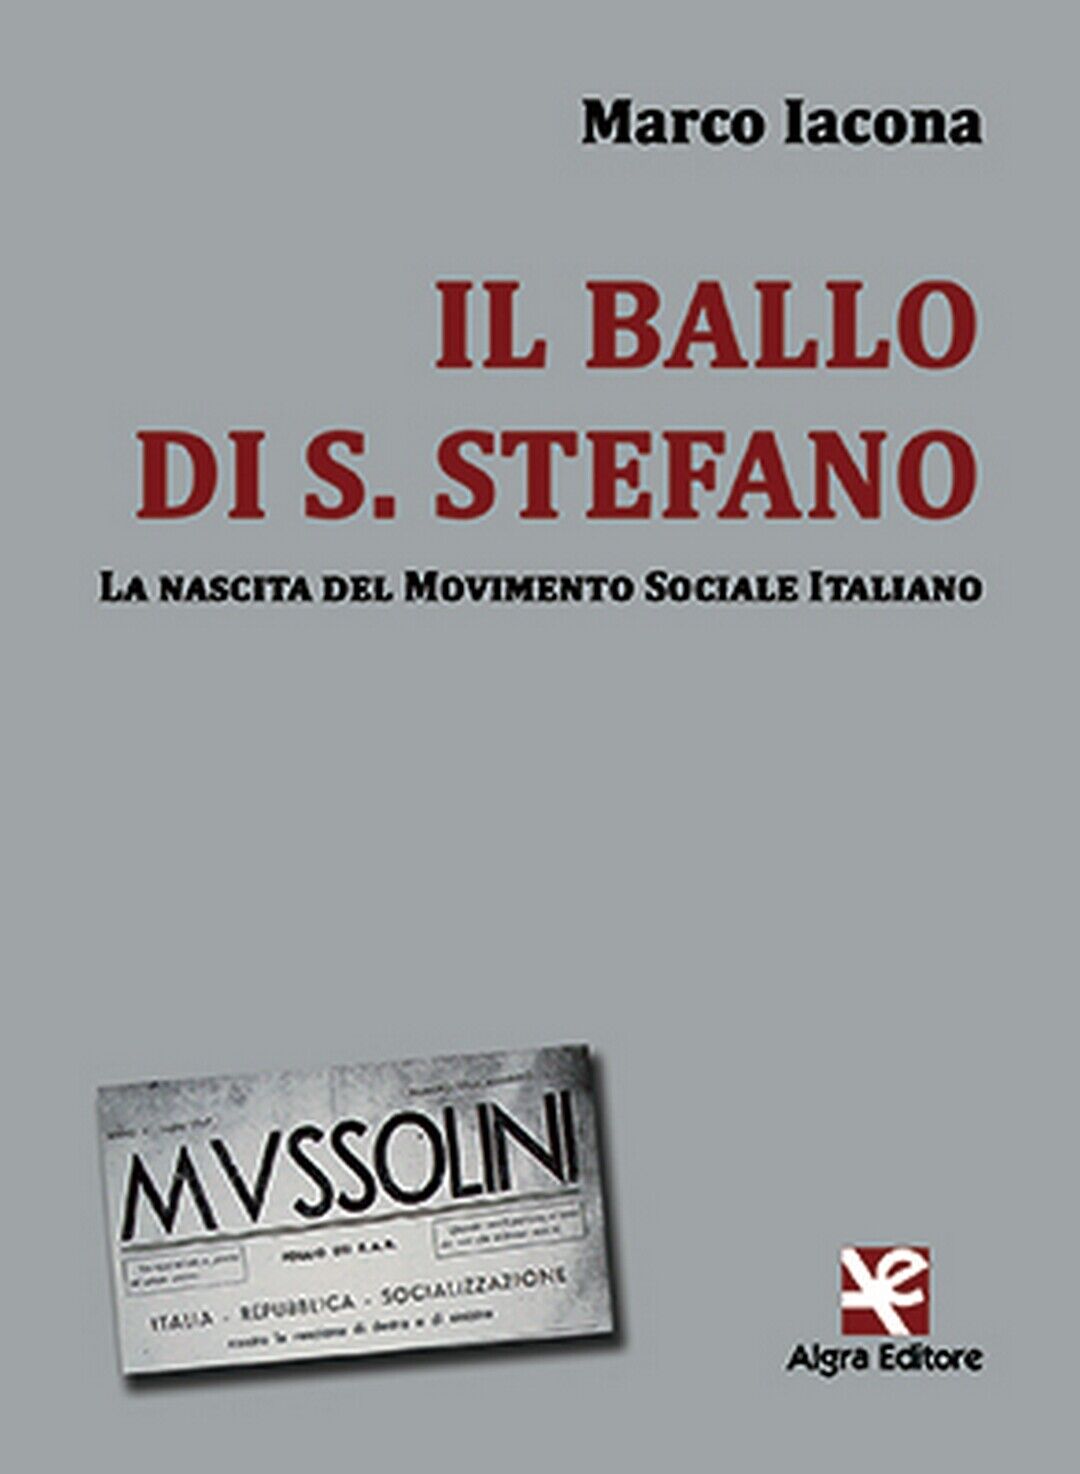 Il ballo di S. Stefano  di Marco Iacona,  Algra Editore